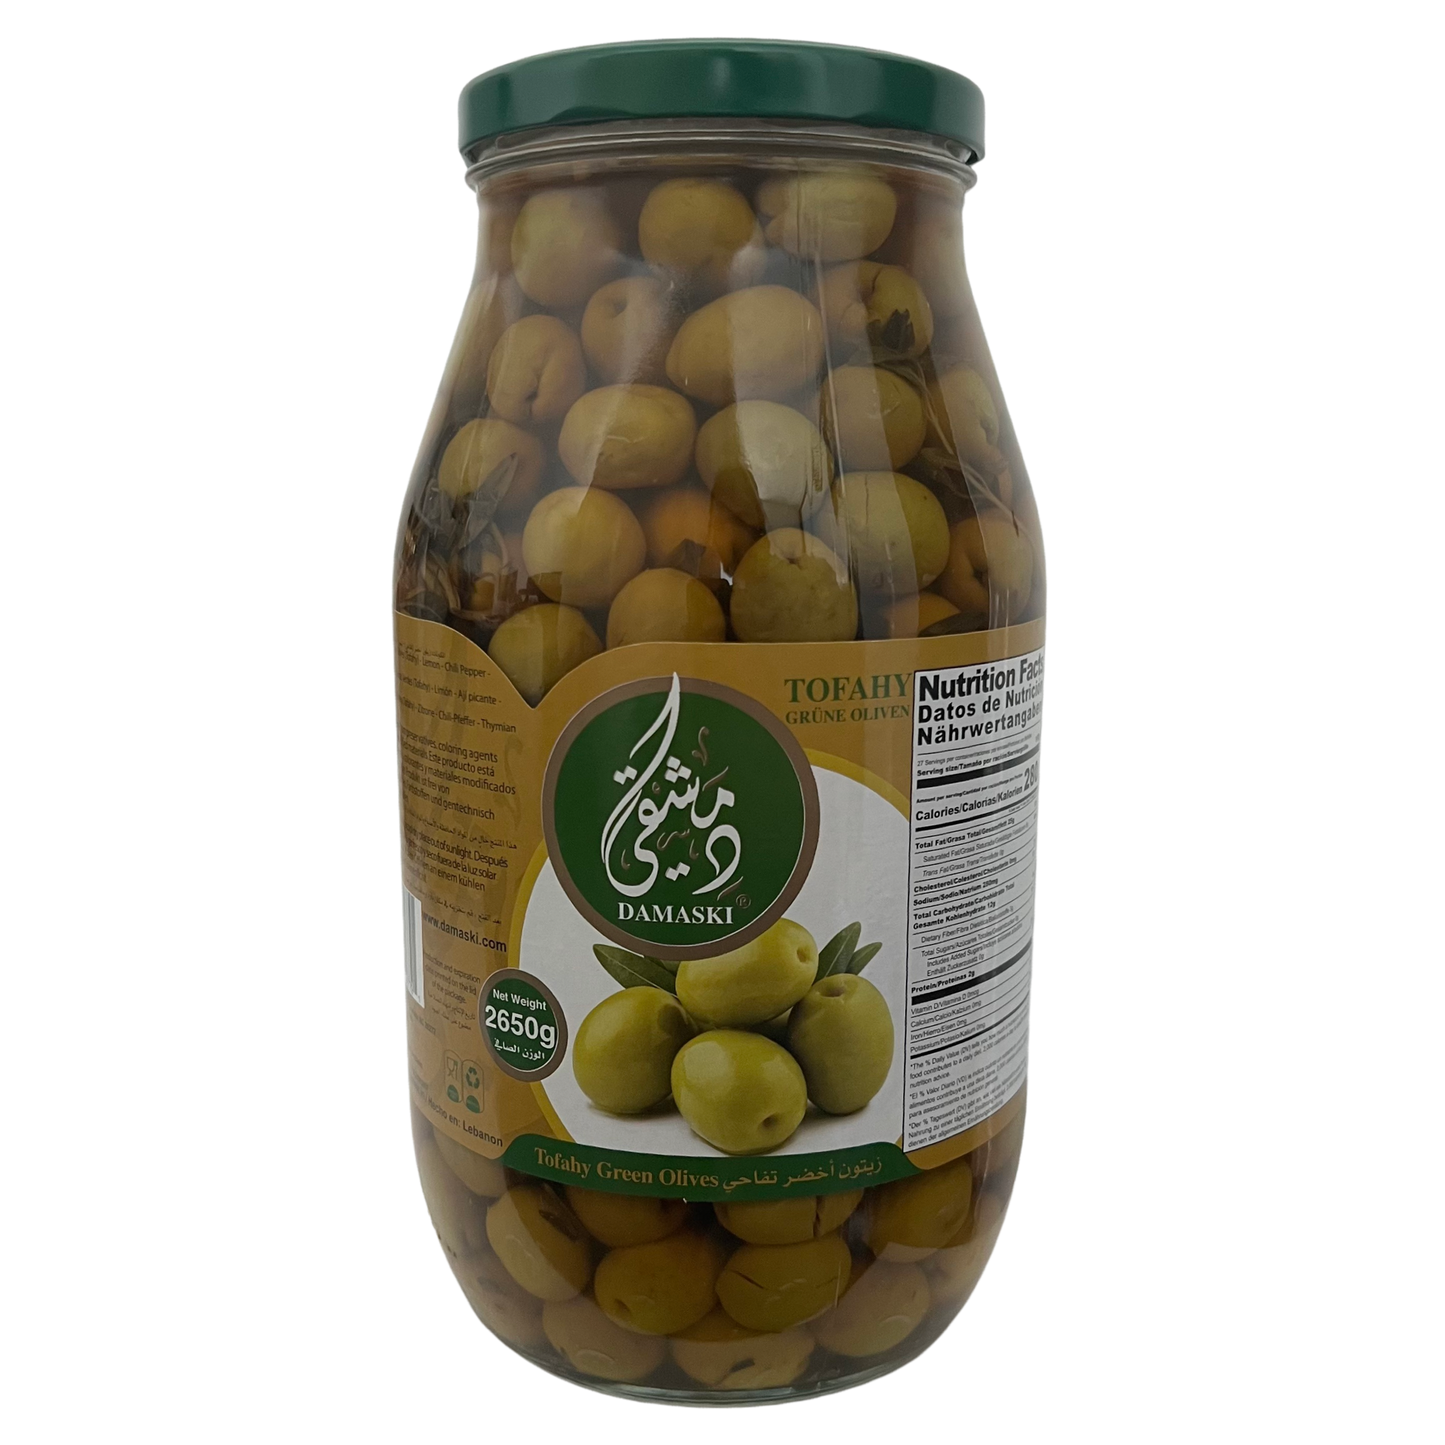 Damaski Green Olive Tofahy 2650g Sirprize